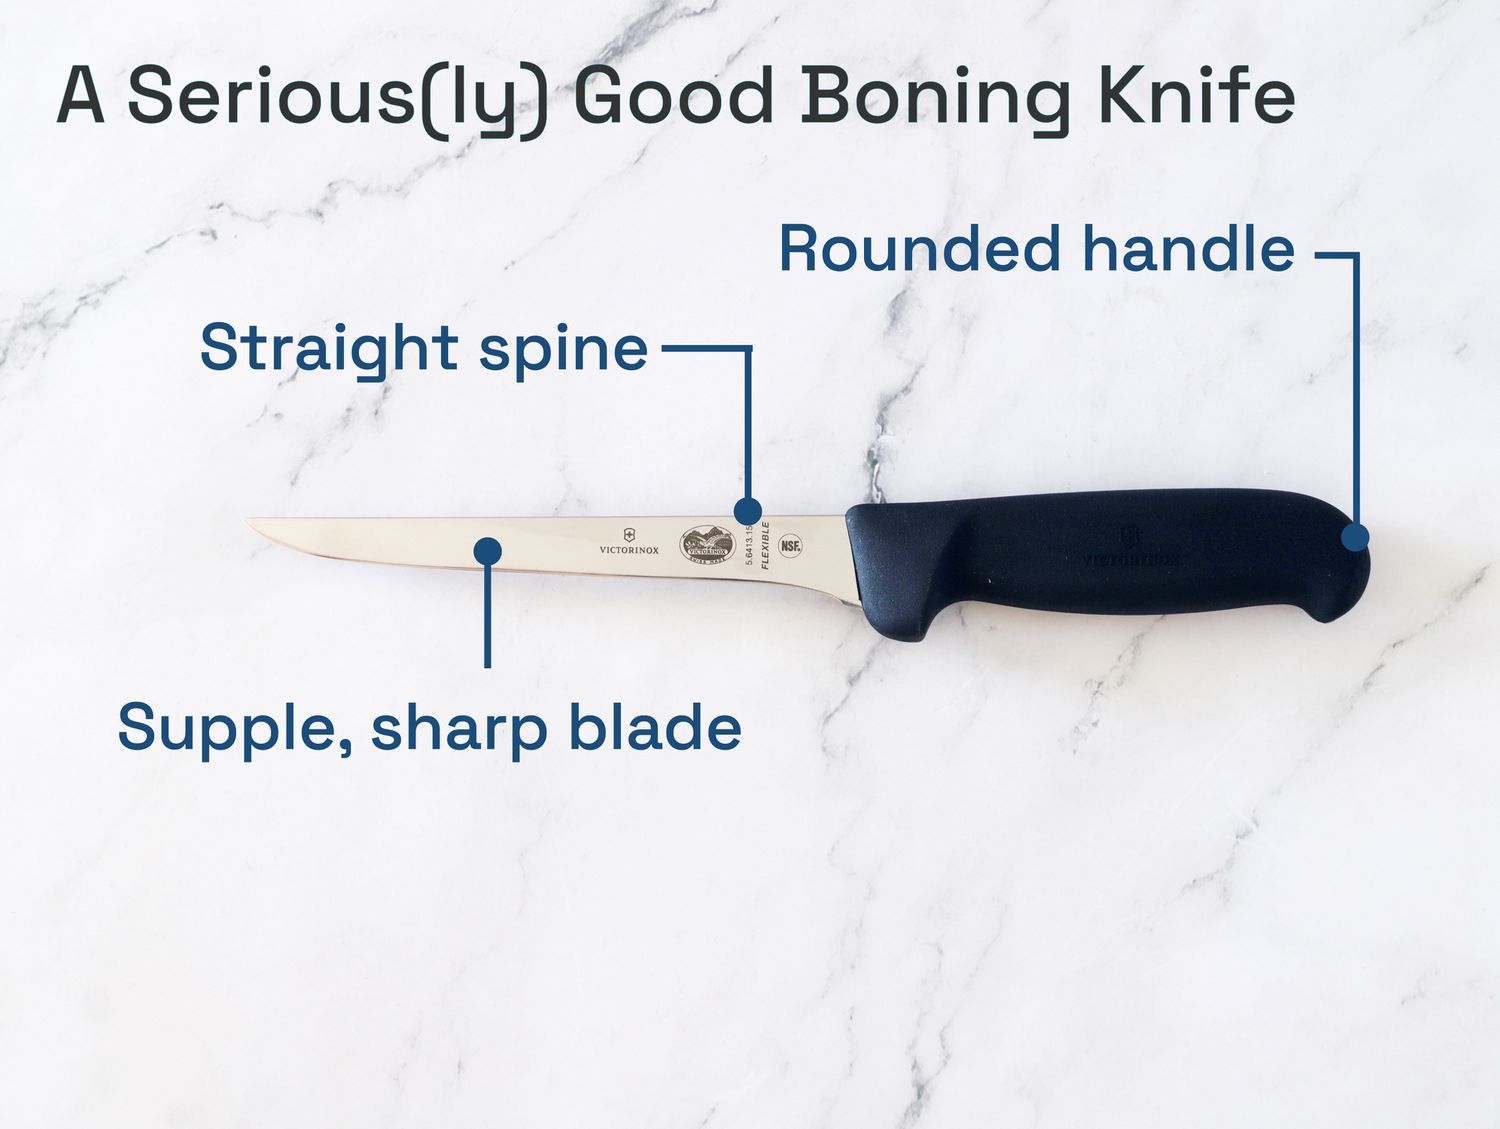 一把真正好的去骨刀应该是直脊、圆柄和柔软锋利的刀刃。